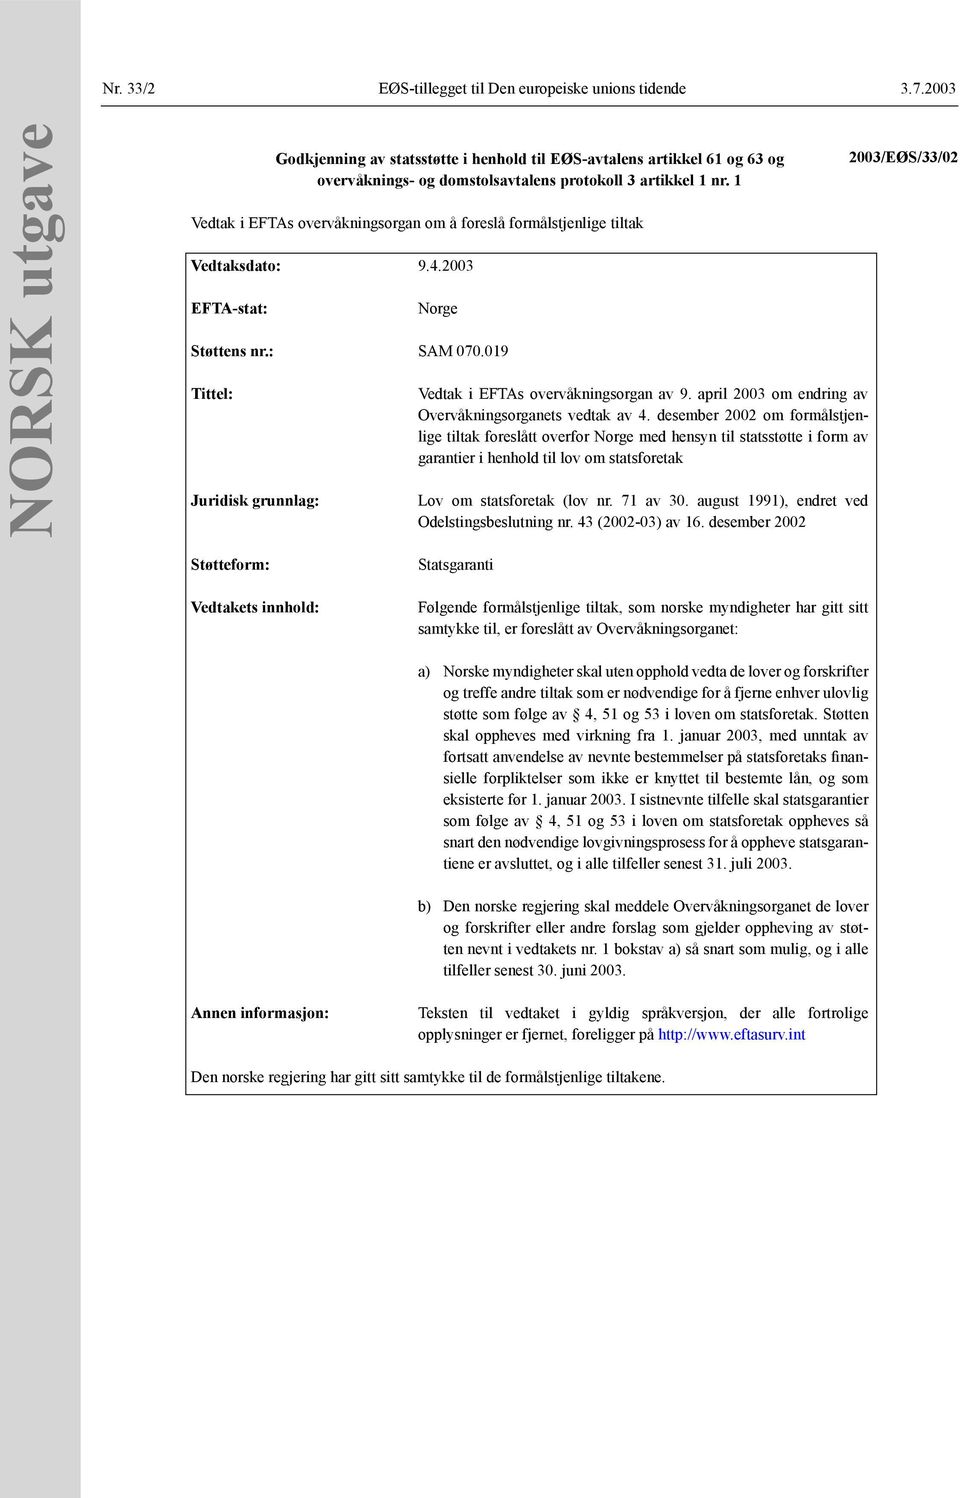 1 Vedtak i EFTAs overvåkningsorgan om å foreslå formålstjenlige tiltak Vedtaksdato: 9.4.2003 EFTA-stat: Norge Støttens nr.: SAM 070.